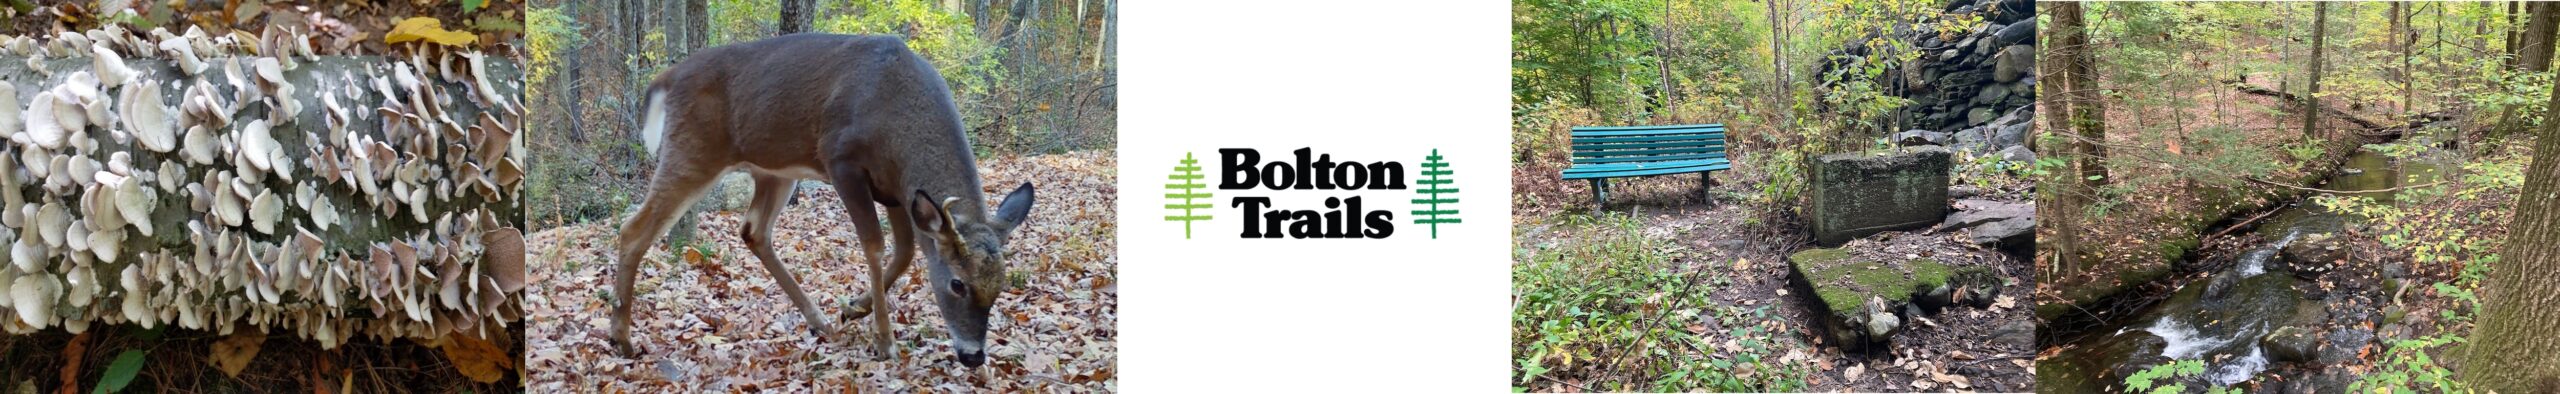 Bolton Trails